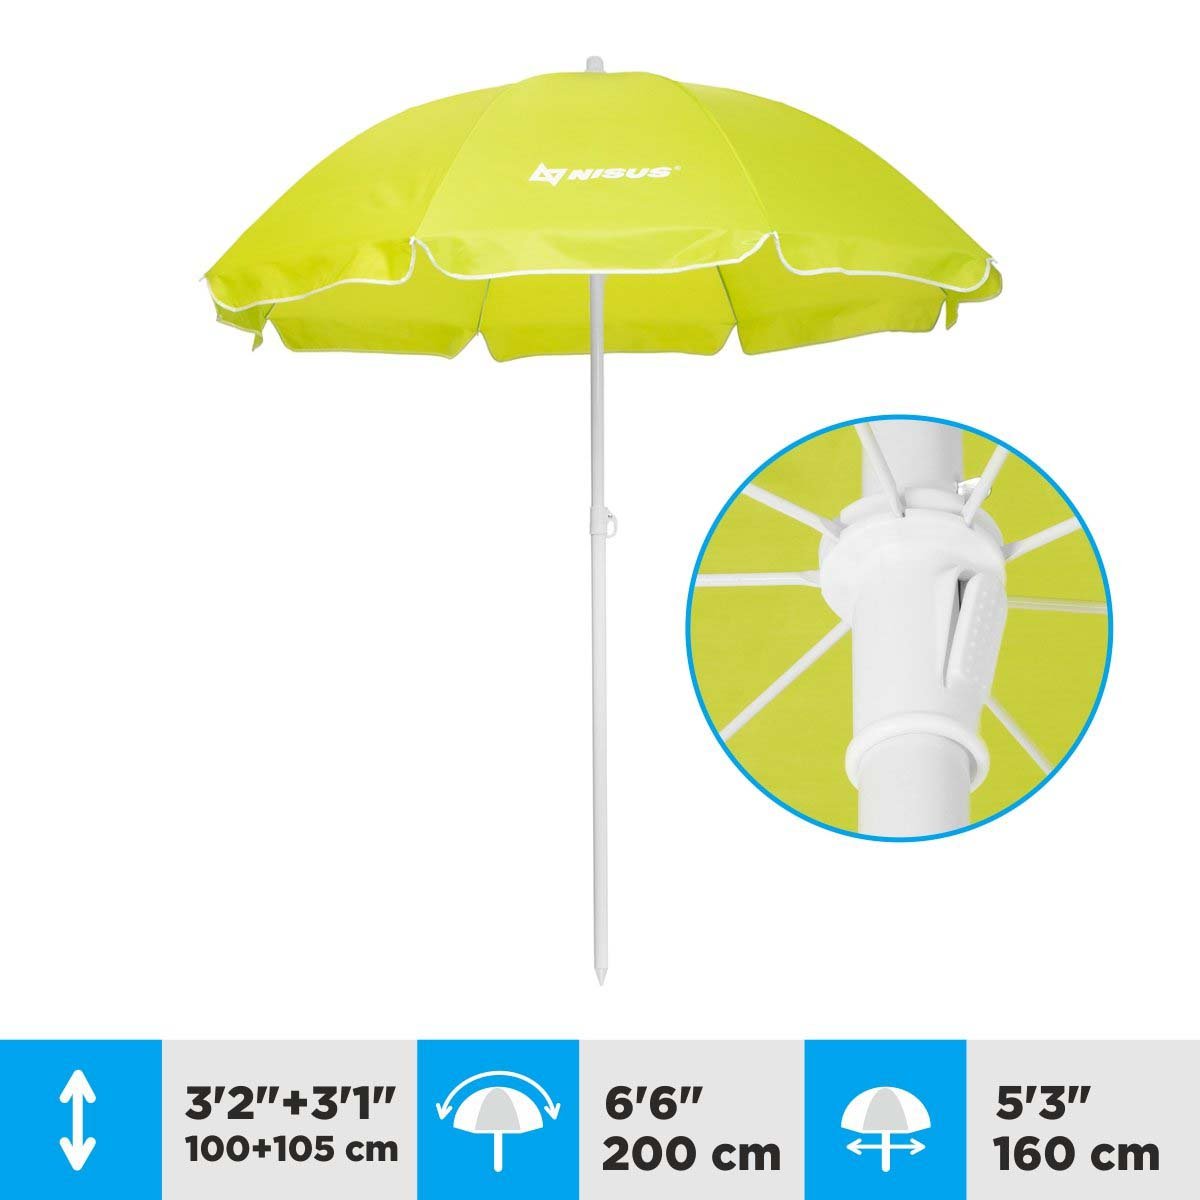 A 5.3 ft Lime Green Tilting Beach Umbrella is 6.3 feet high